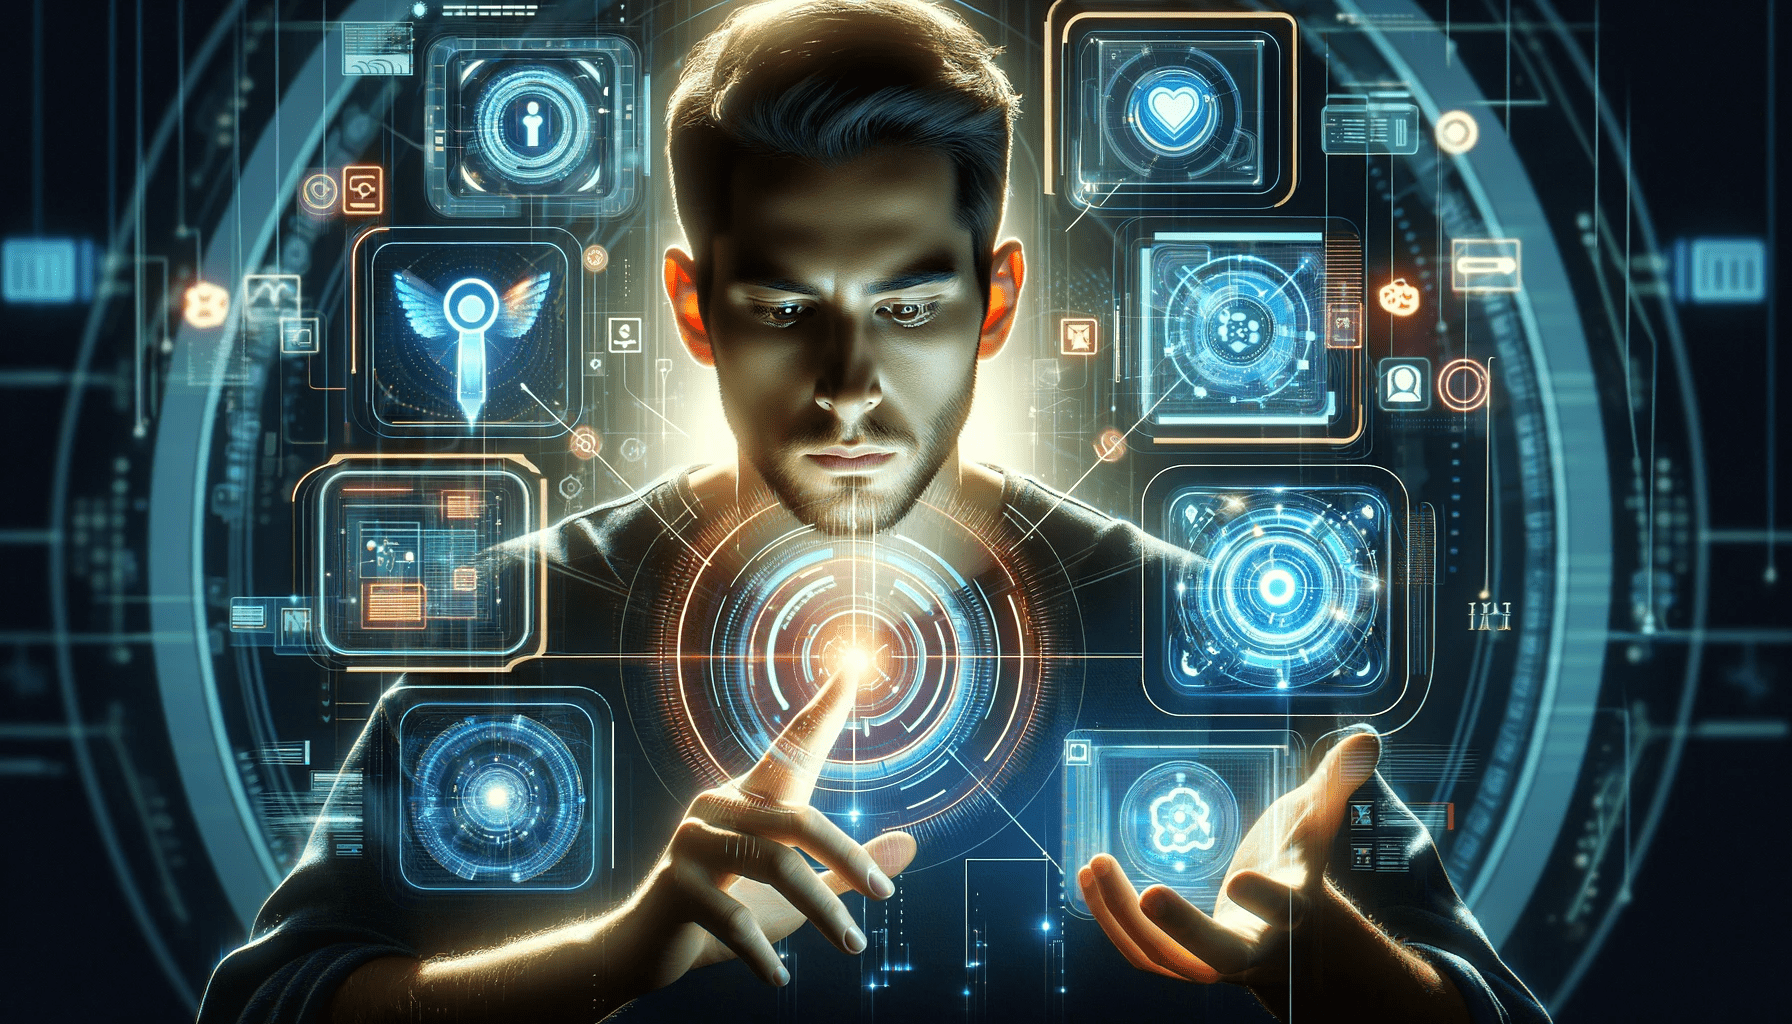 Ein Mann, der von Technologie umgeben ist, mit mehreren leuchtenden Bildschirmen, die verschiedene Arten von Informationen anzeigen.